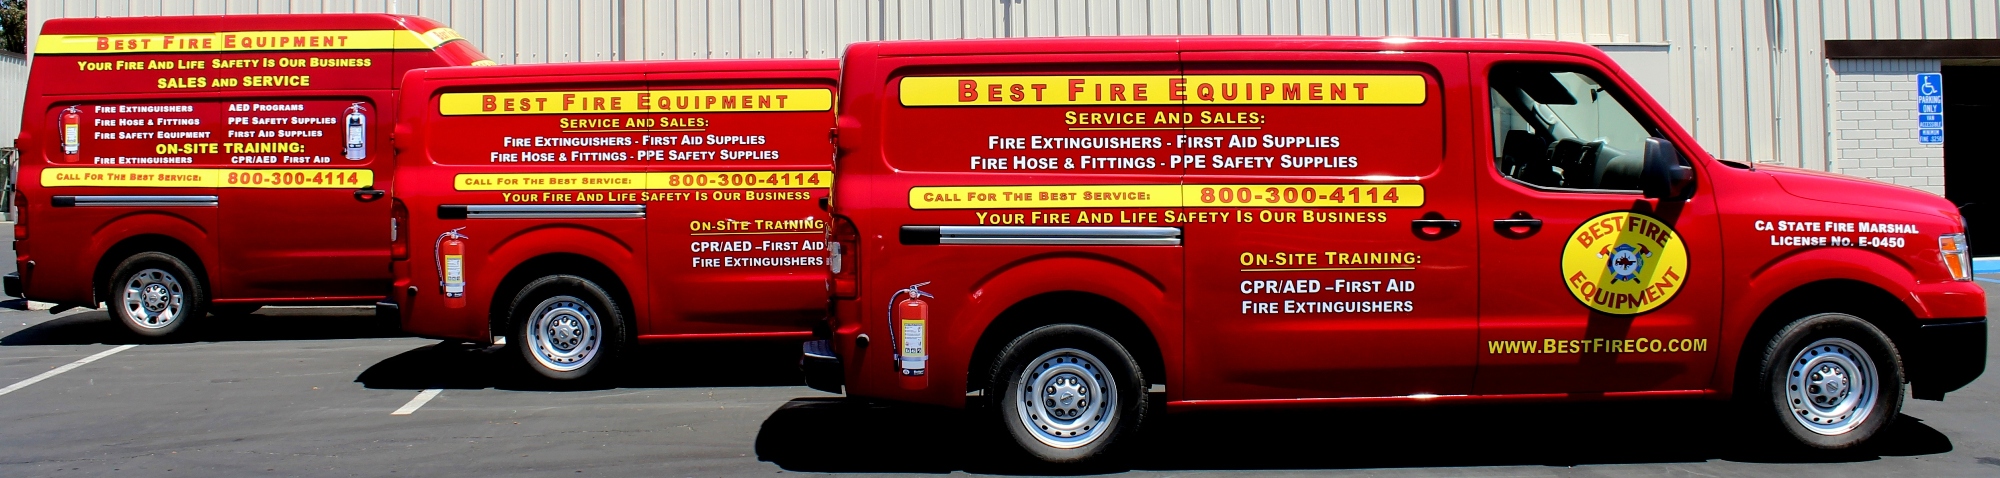 Best Fire Equipment Trucks